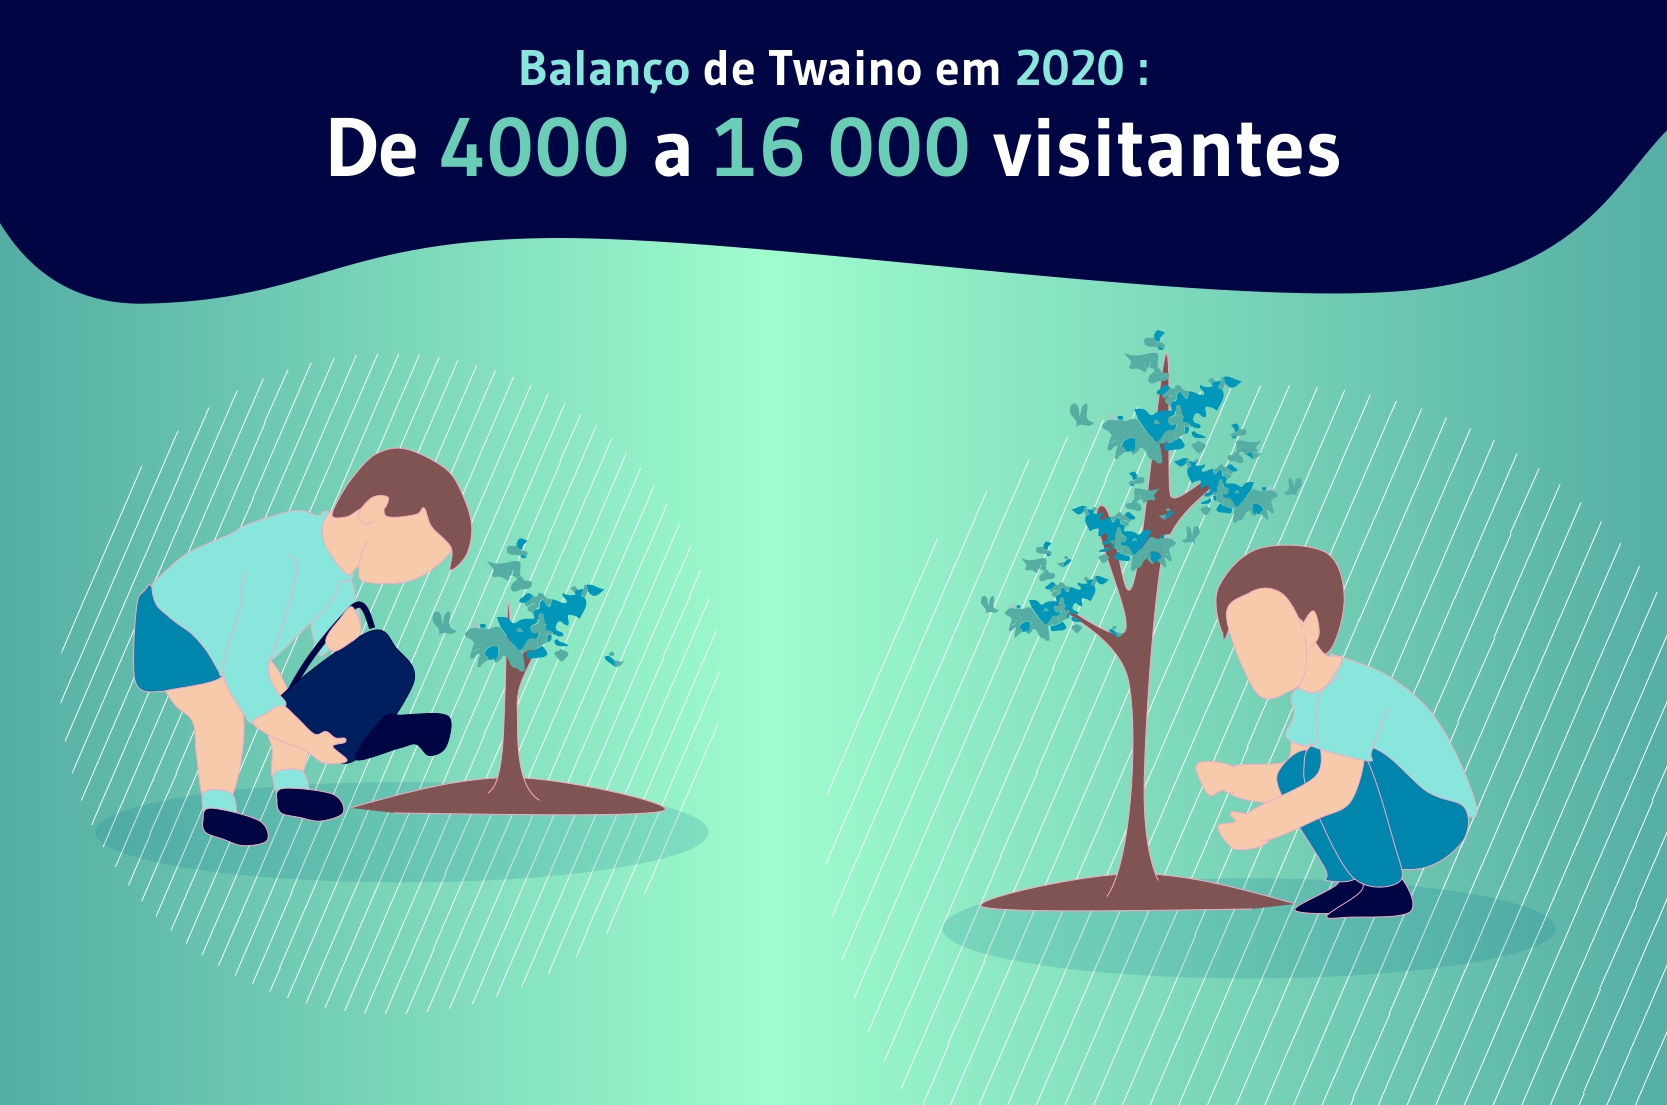 Balanço de Twaino em 2020: De 4000 a 16 000 visitantes